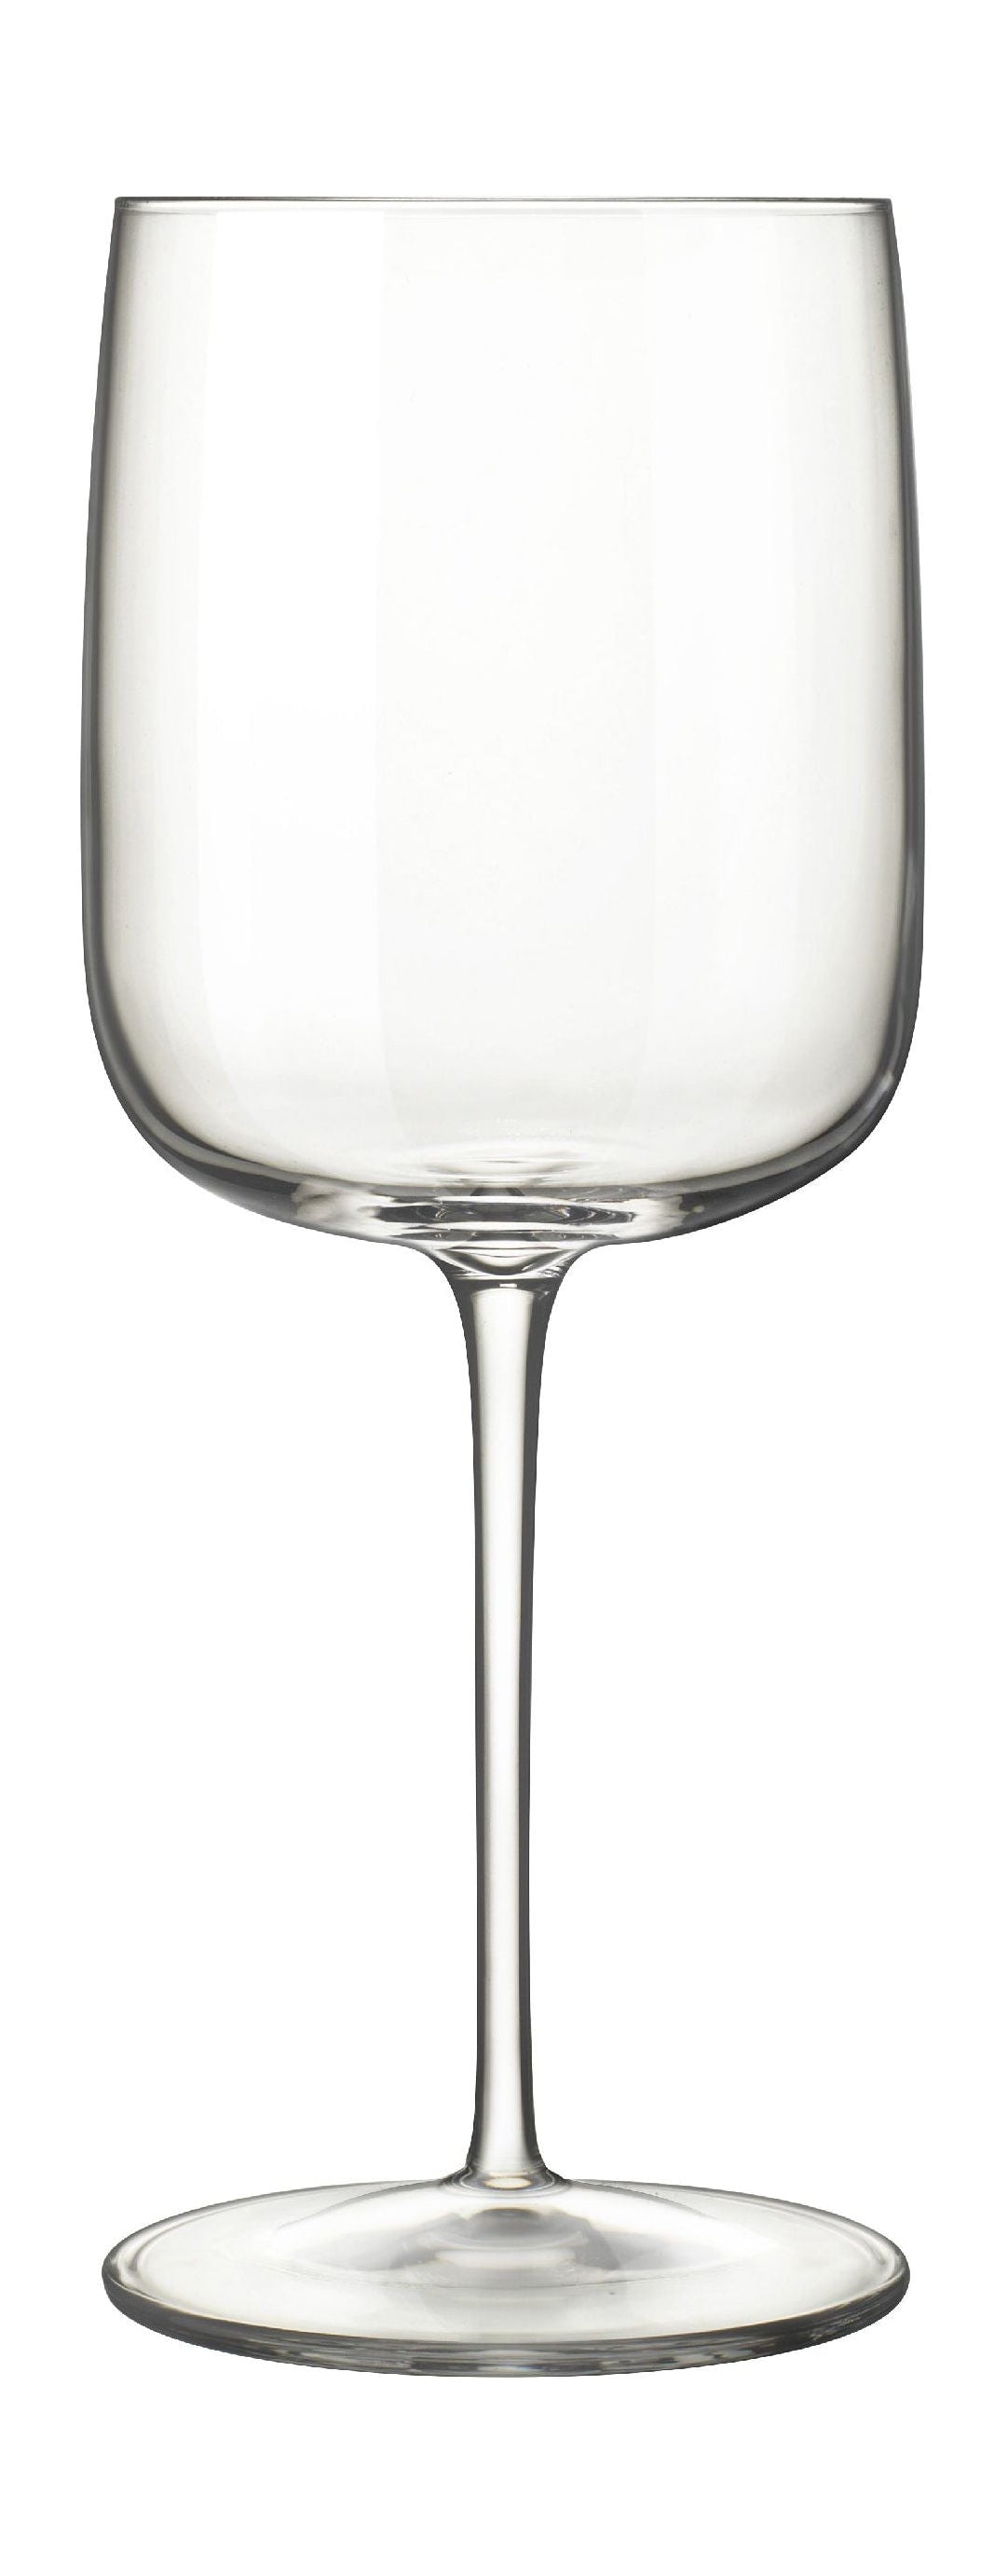 Luigi Bormioli Vinalia红酒玻璃55 Cl 6 PC。